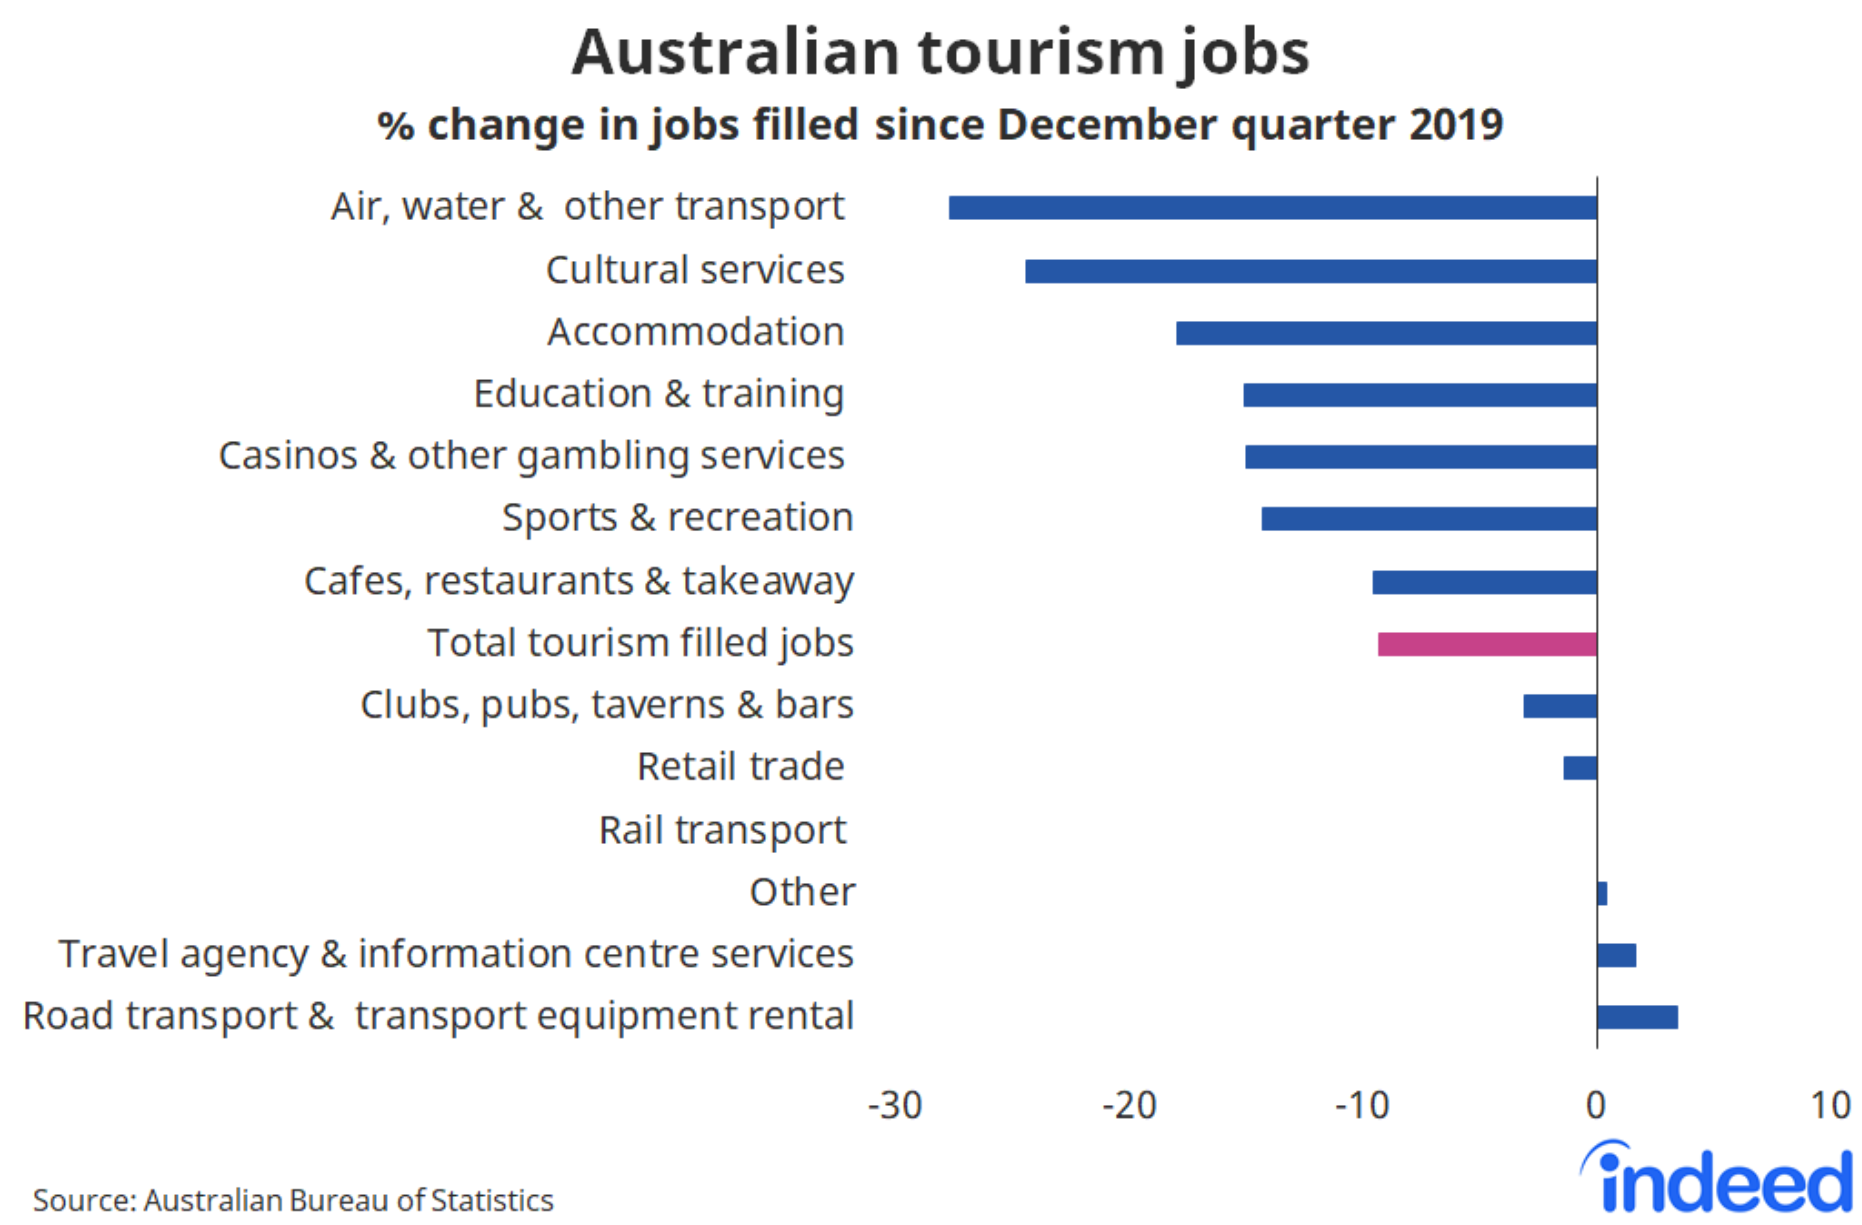 Tourism jobs